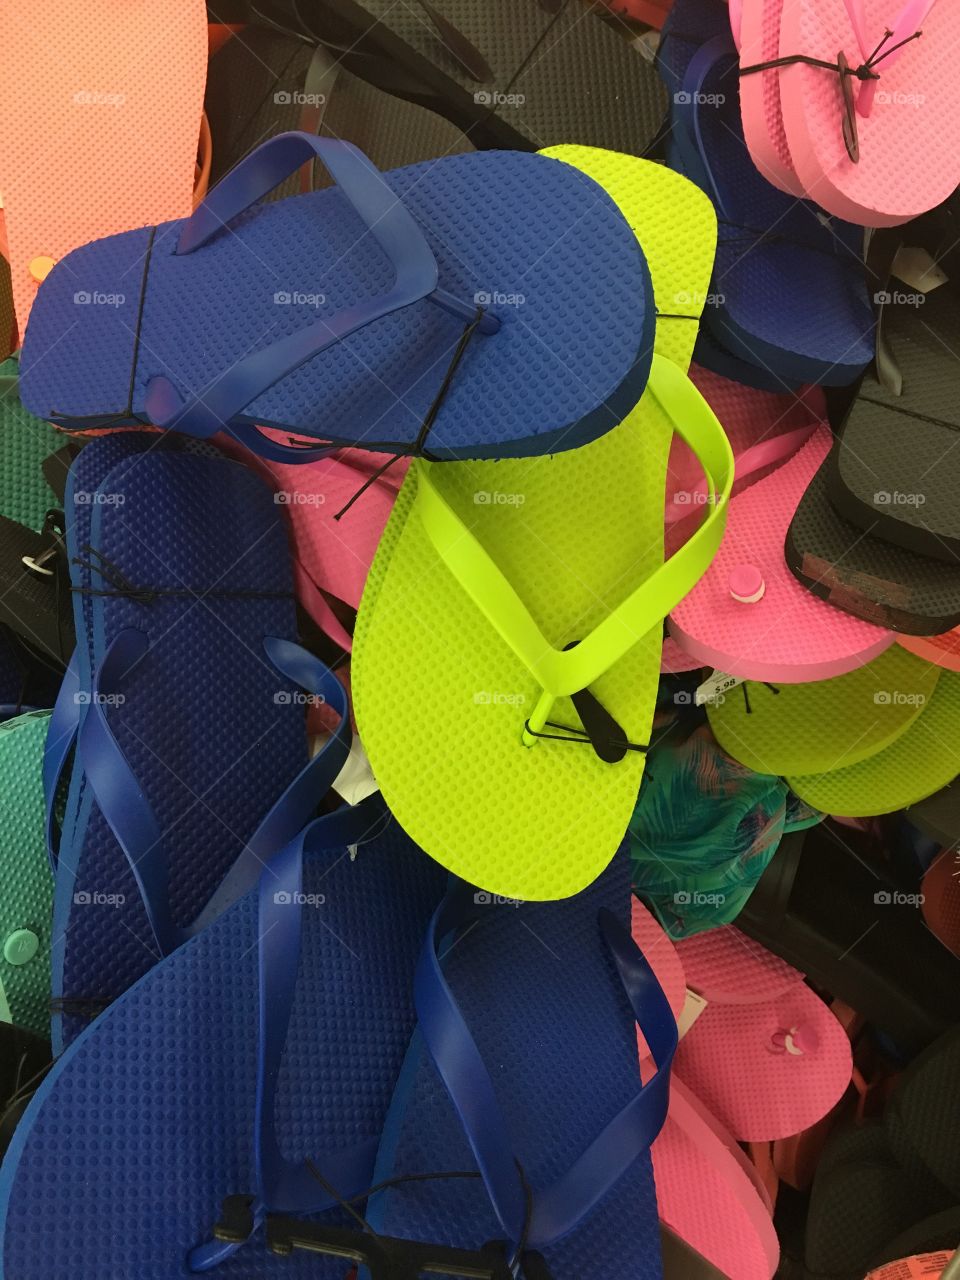 Assorted sandals - flip-flops